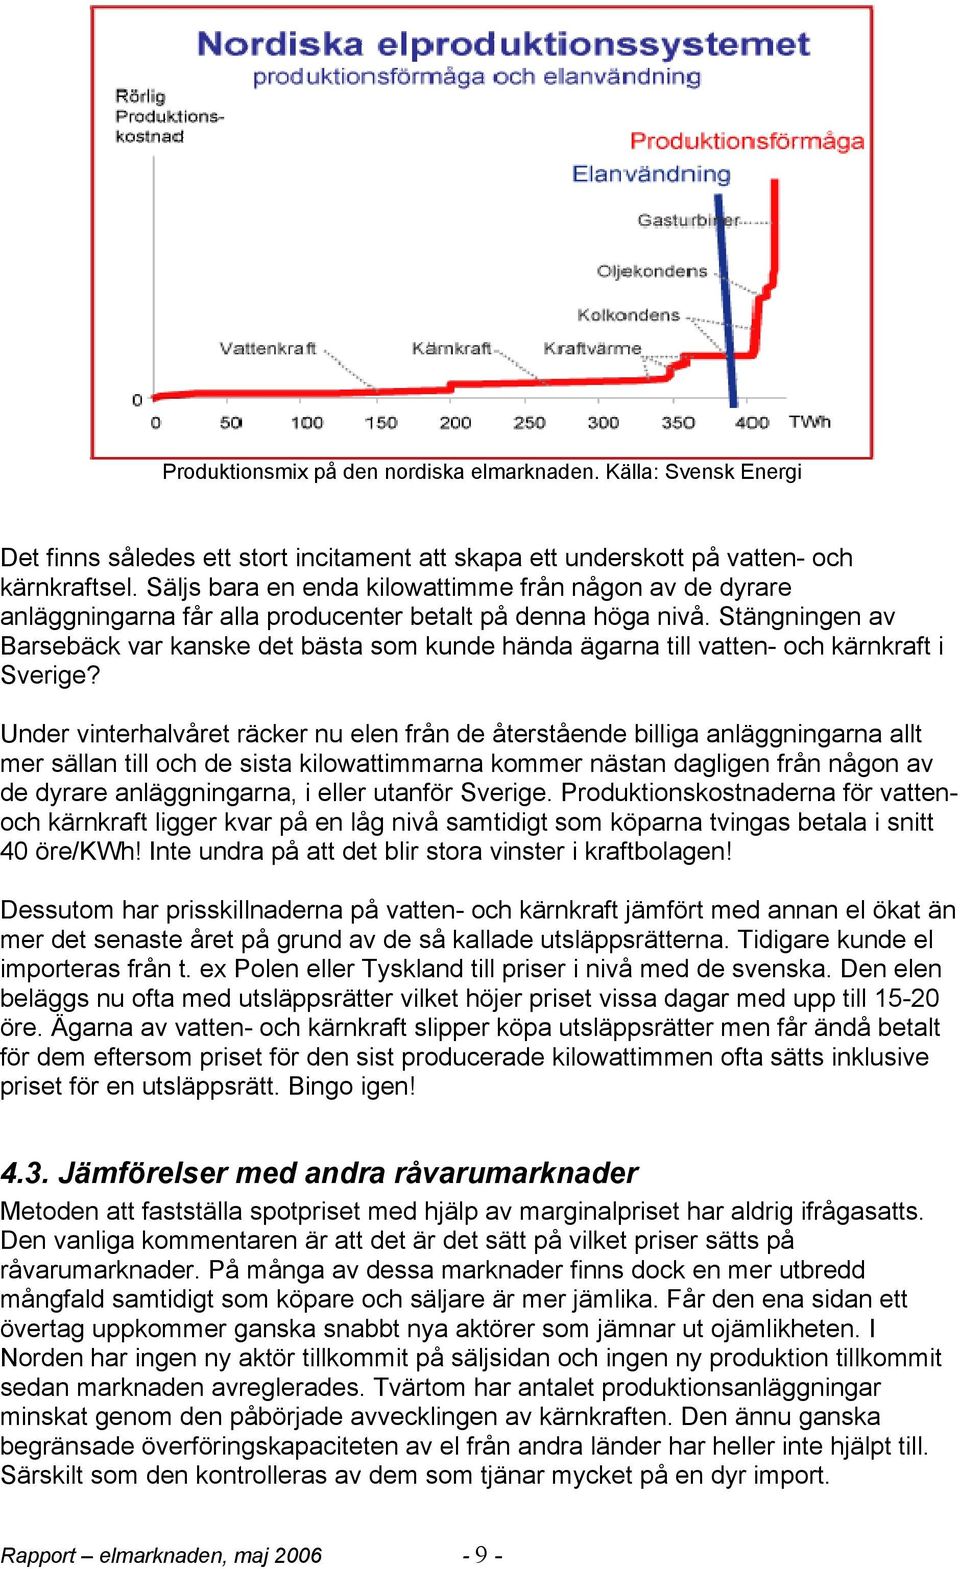 Stängningen av Barsebäck var kanske det bästa som kunde hända ägarna till vatten- och kärnkraft i Sverige?